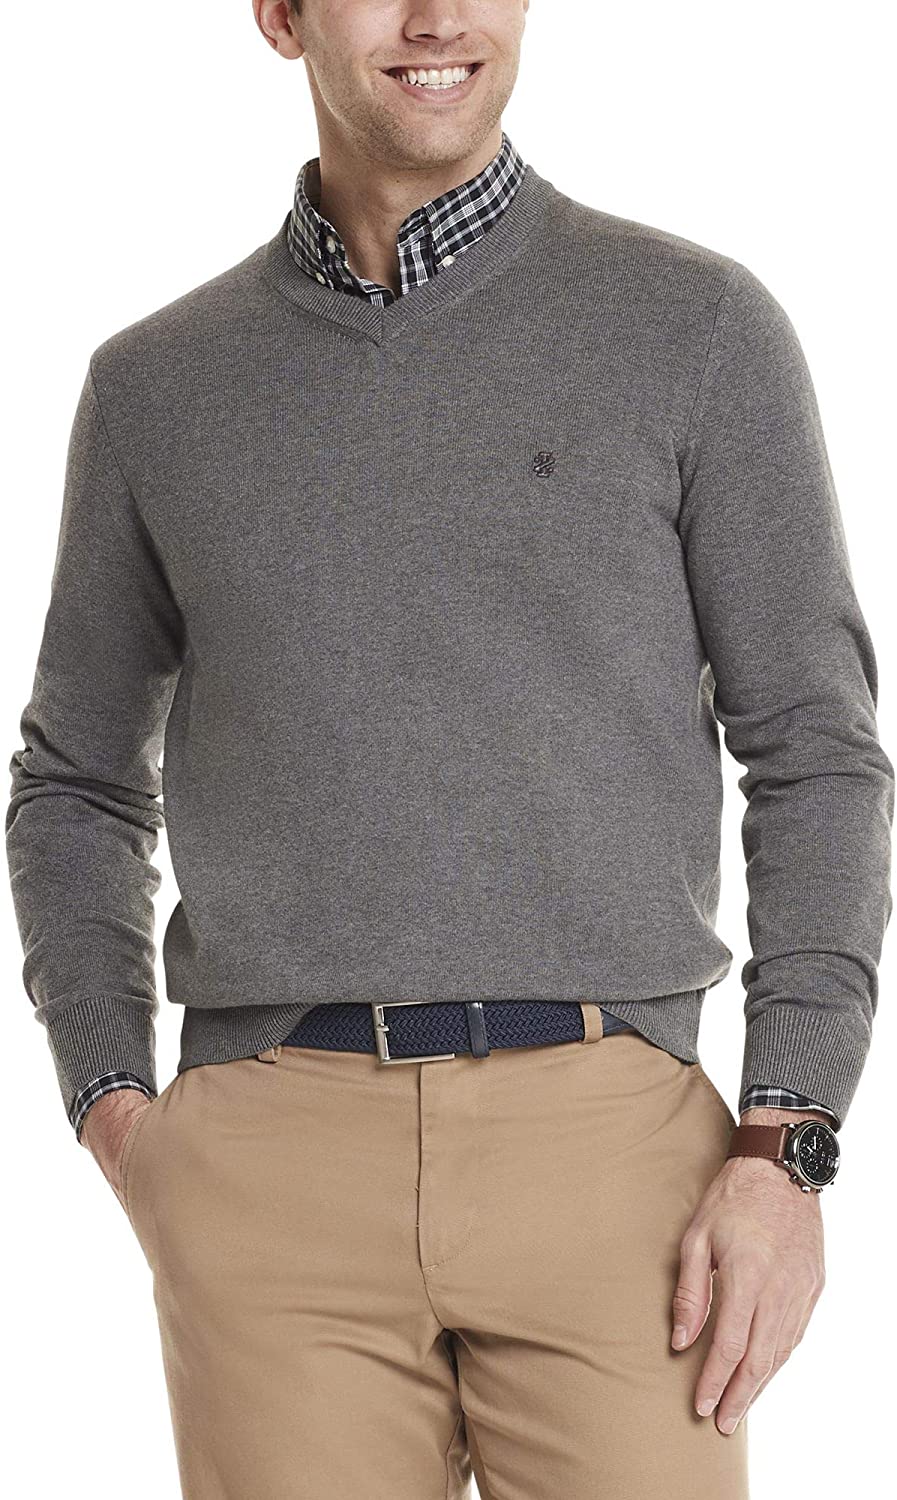 IZOD Men's Premium Essentials Quarter Zip Solid 12 Gauge Sweater, Black  GS167, Small at  Men's Clothing store